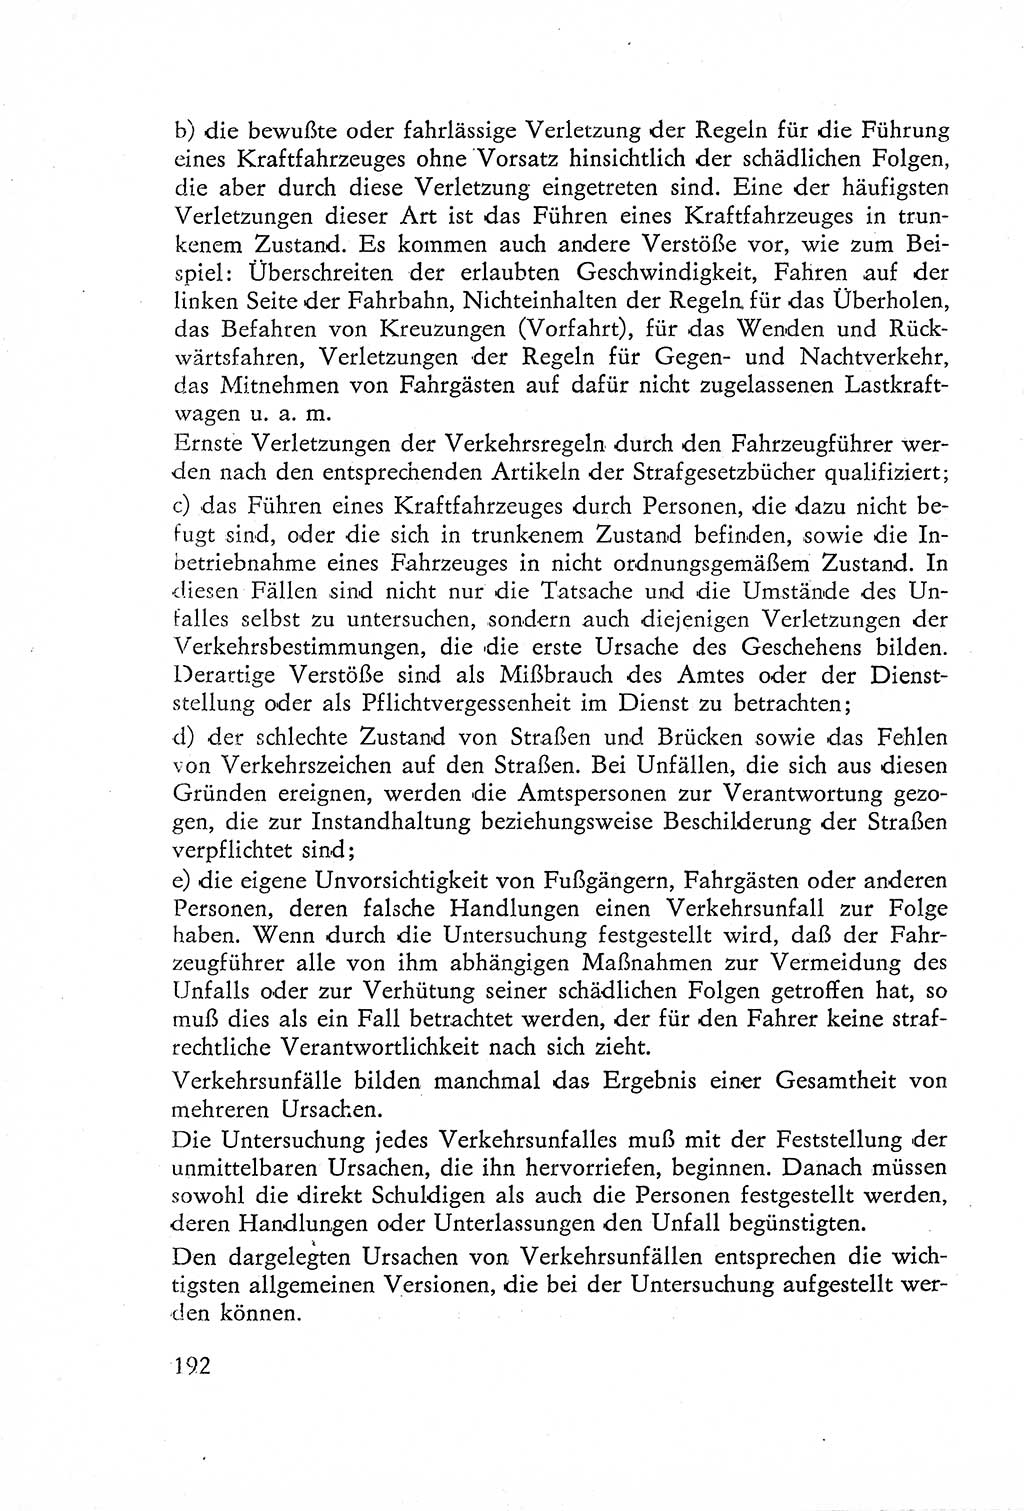 Die Untersuchung einzelner Verbrechensarten [Deutsche Demokratische Republik (DDR)] 1960, Seite 192 (Unters. Verbr.-Art. DDR 1960, S. 192)